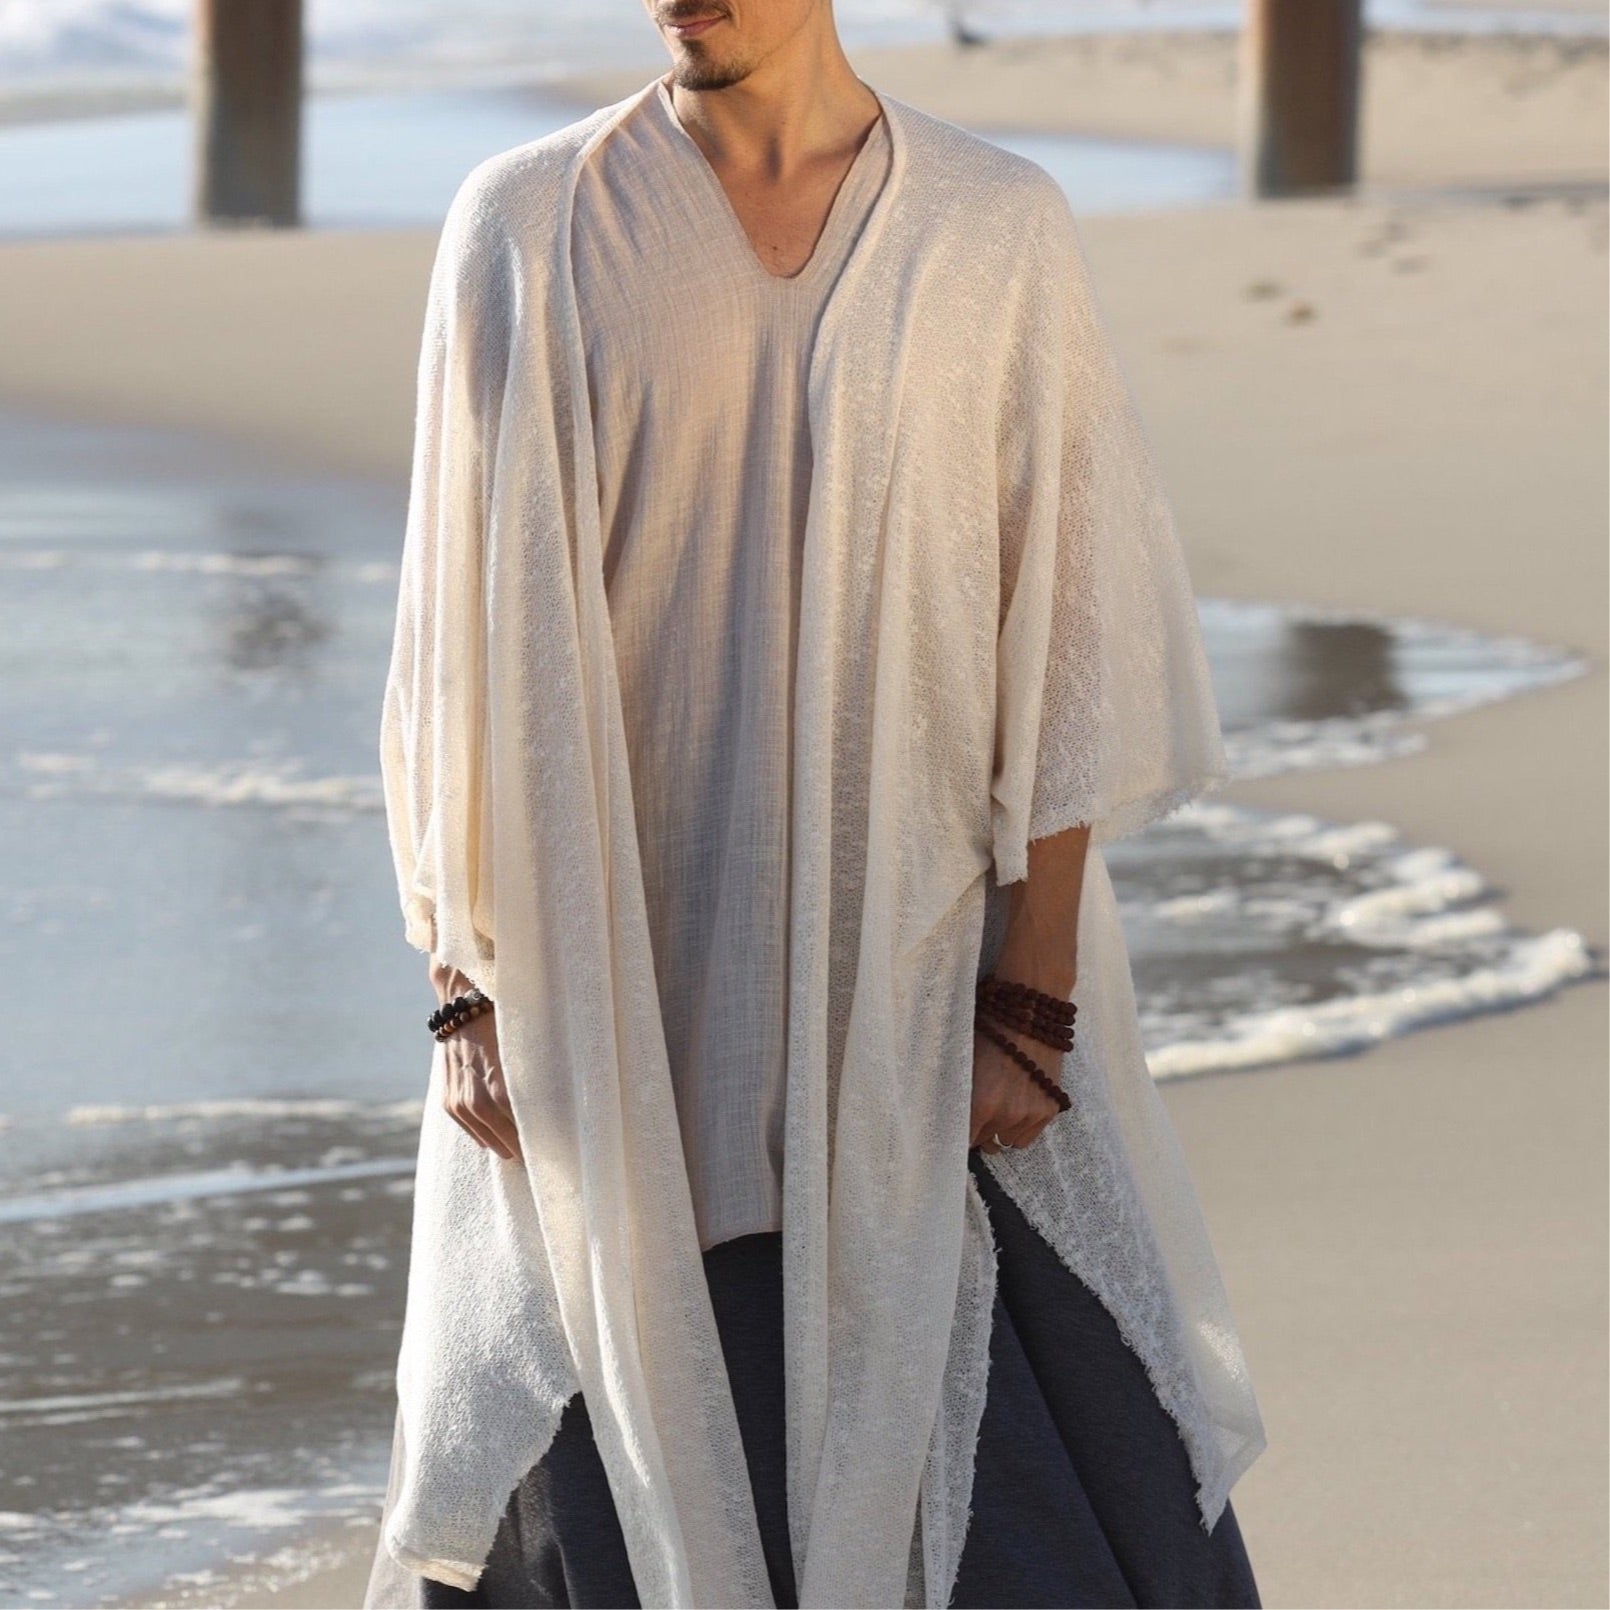 glorka shawl